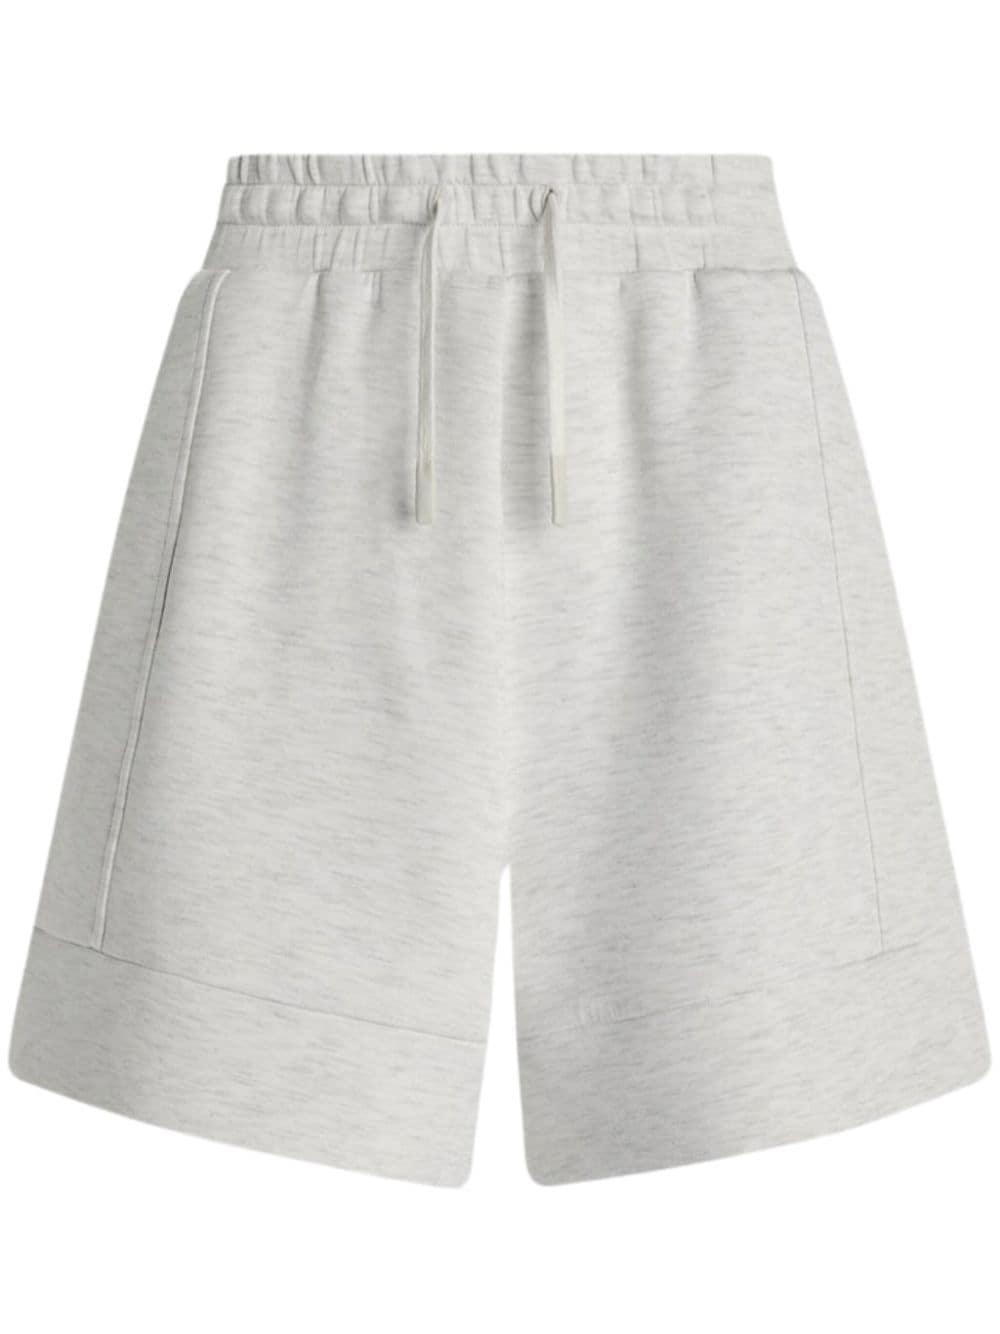 Varley Atrium high-waisted shorts - Grey von Varley